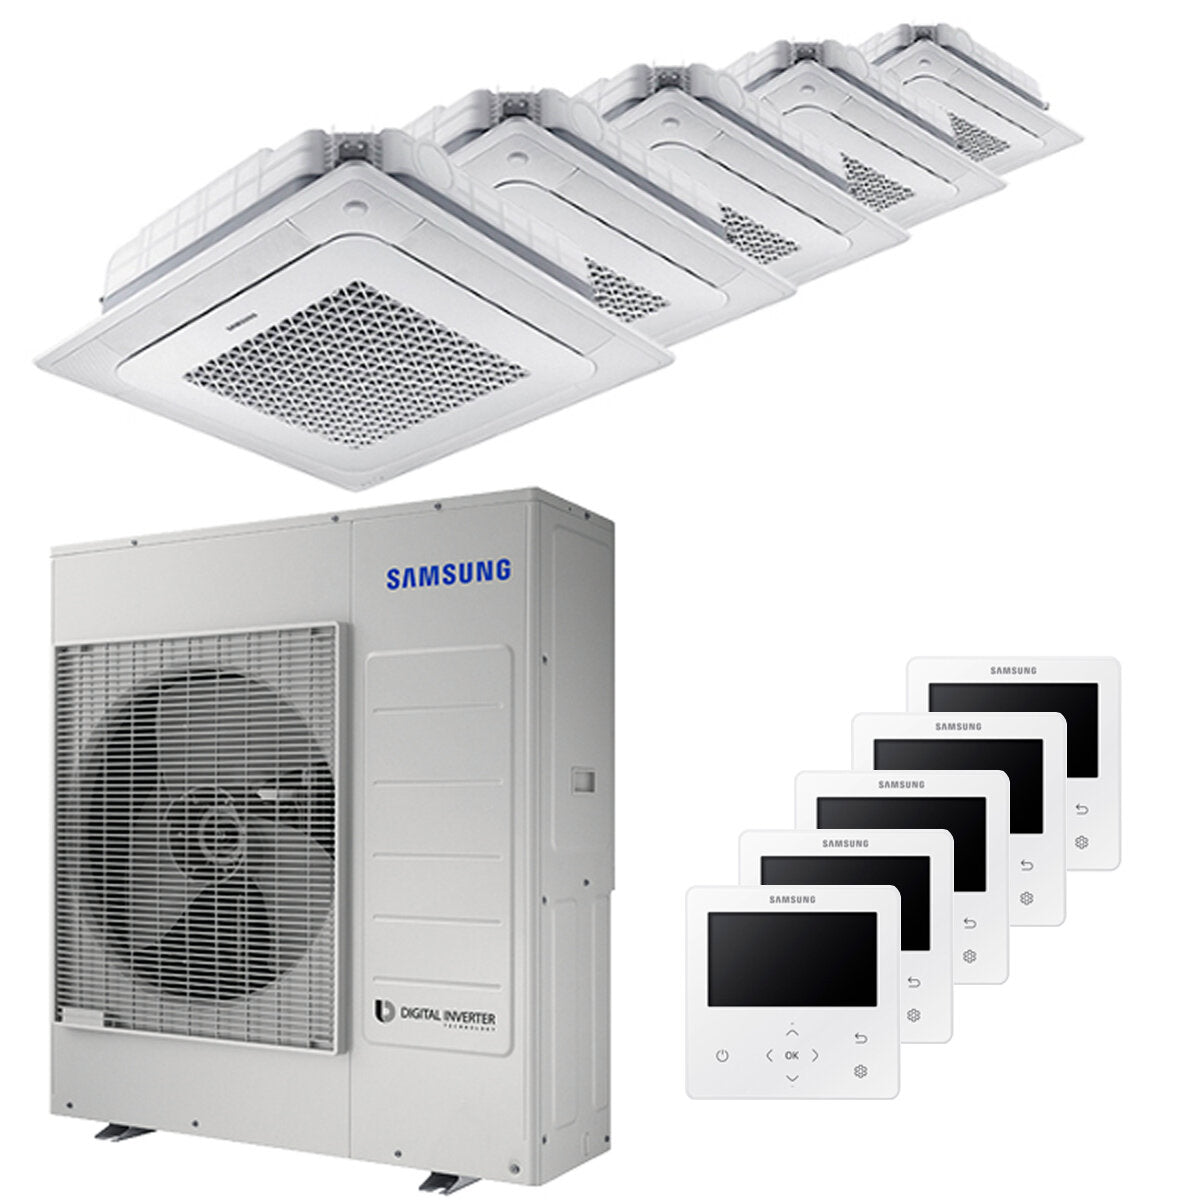 Samsung Air conditioner Windfree 4-way penta split 7000 + 9000 + 12000 + 12000 + 12000 BTU inverter A ++ outdoor unit 10.0 kW